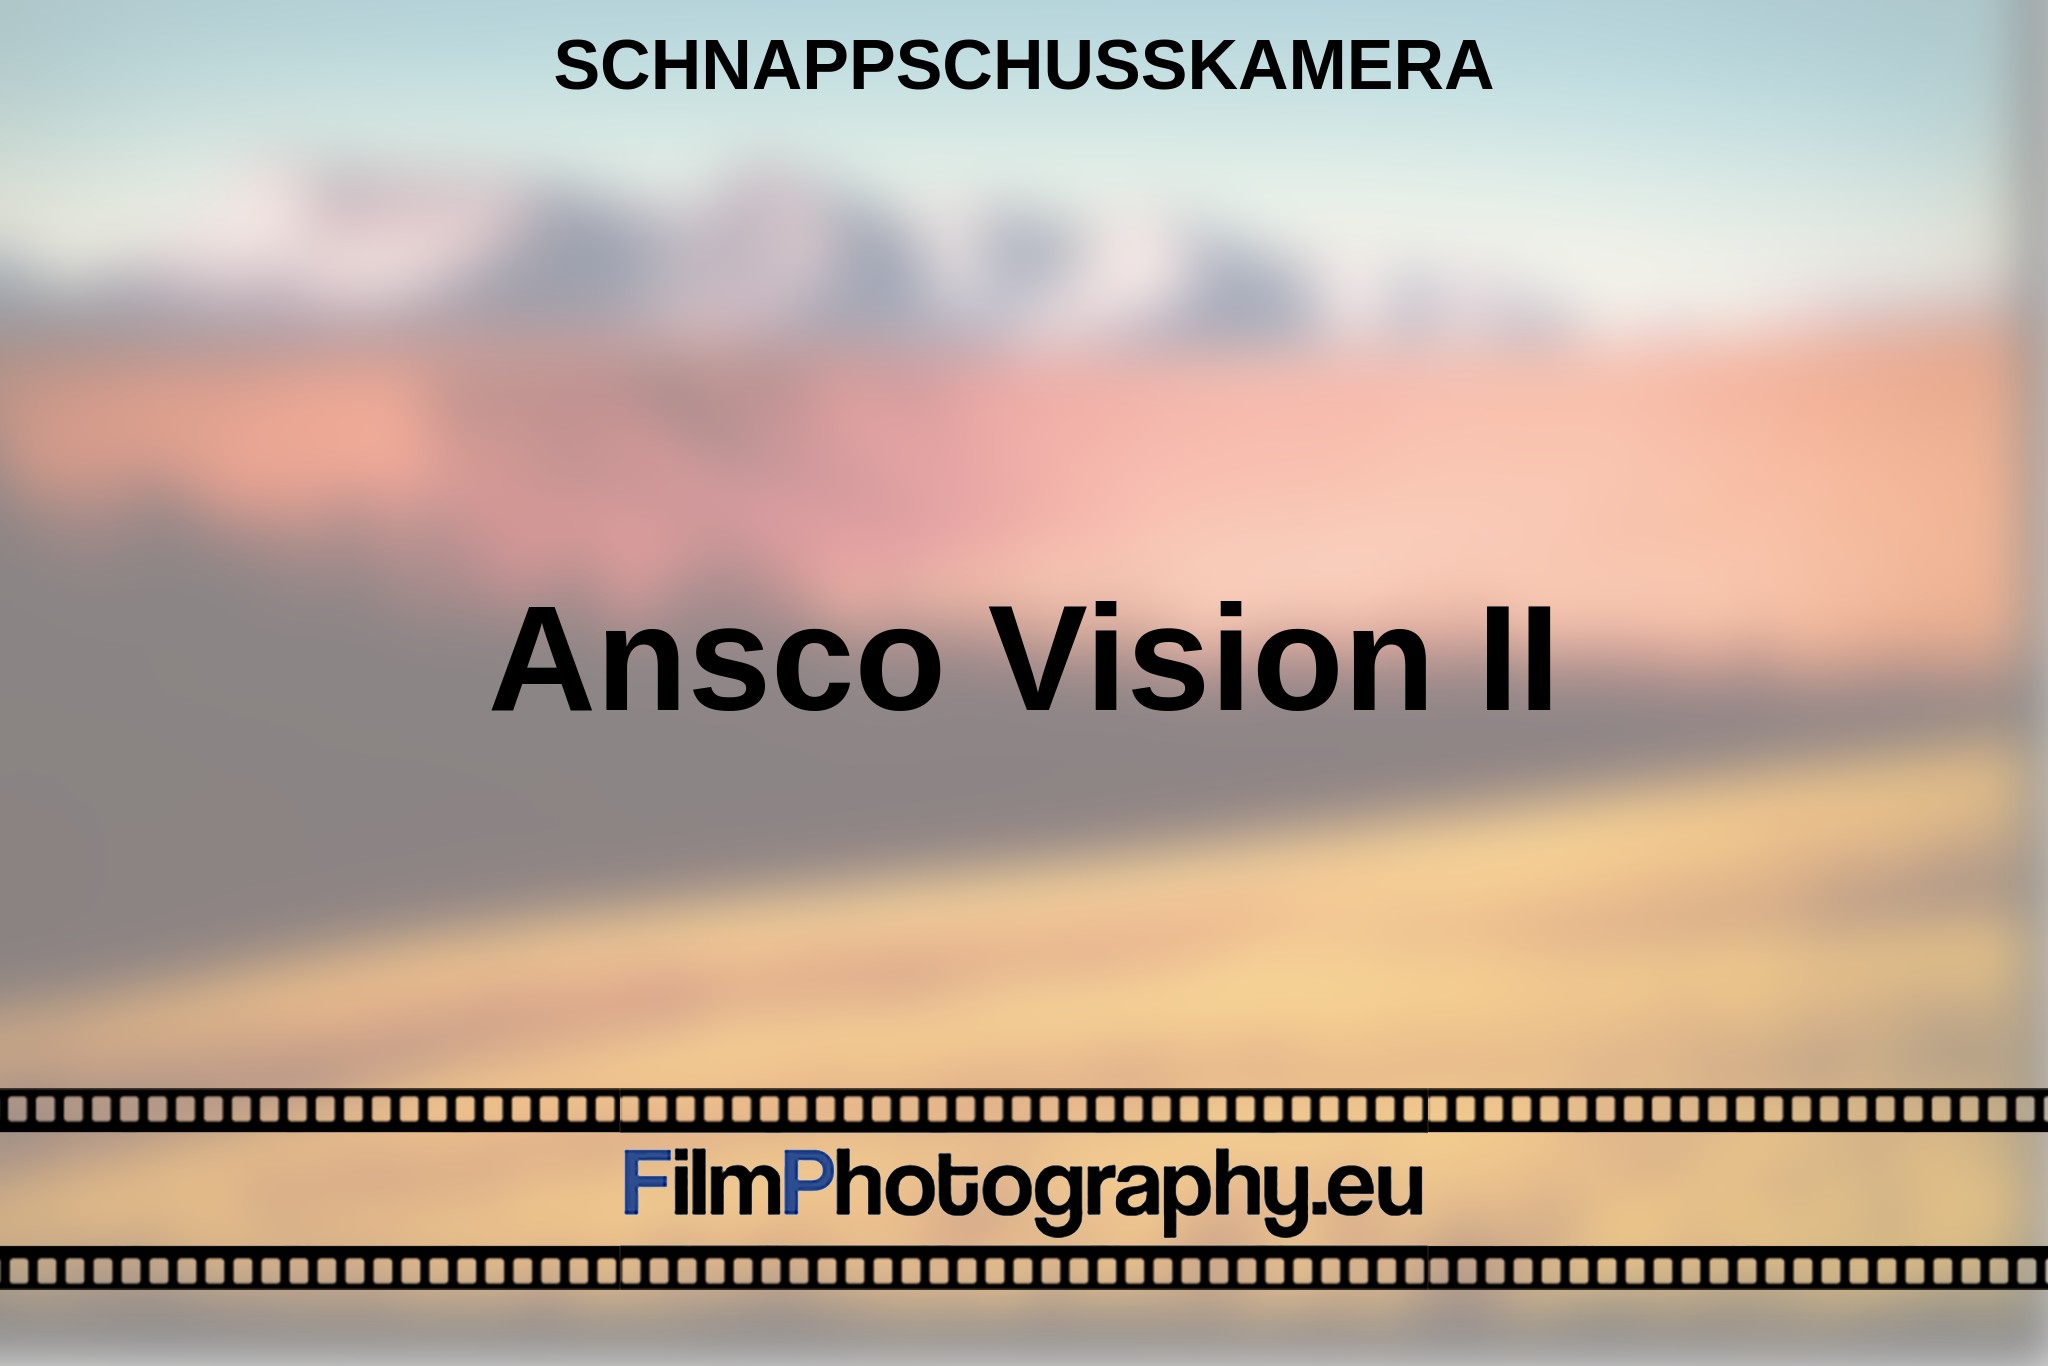 ansco-vision-ii-schnappschusskamera-bnv.jpg